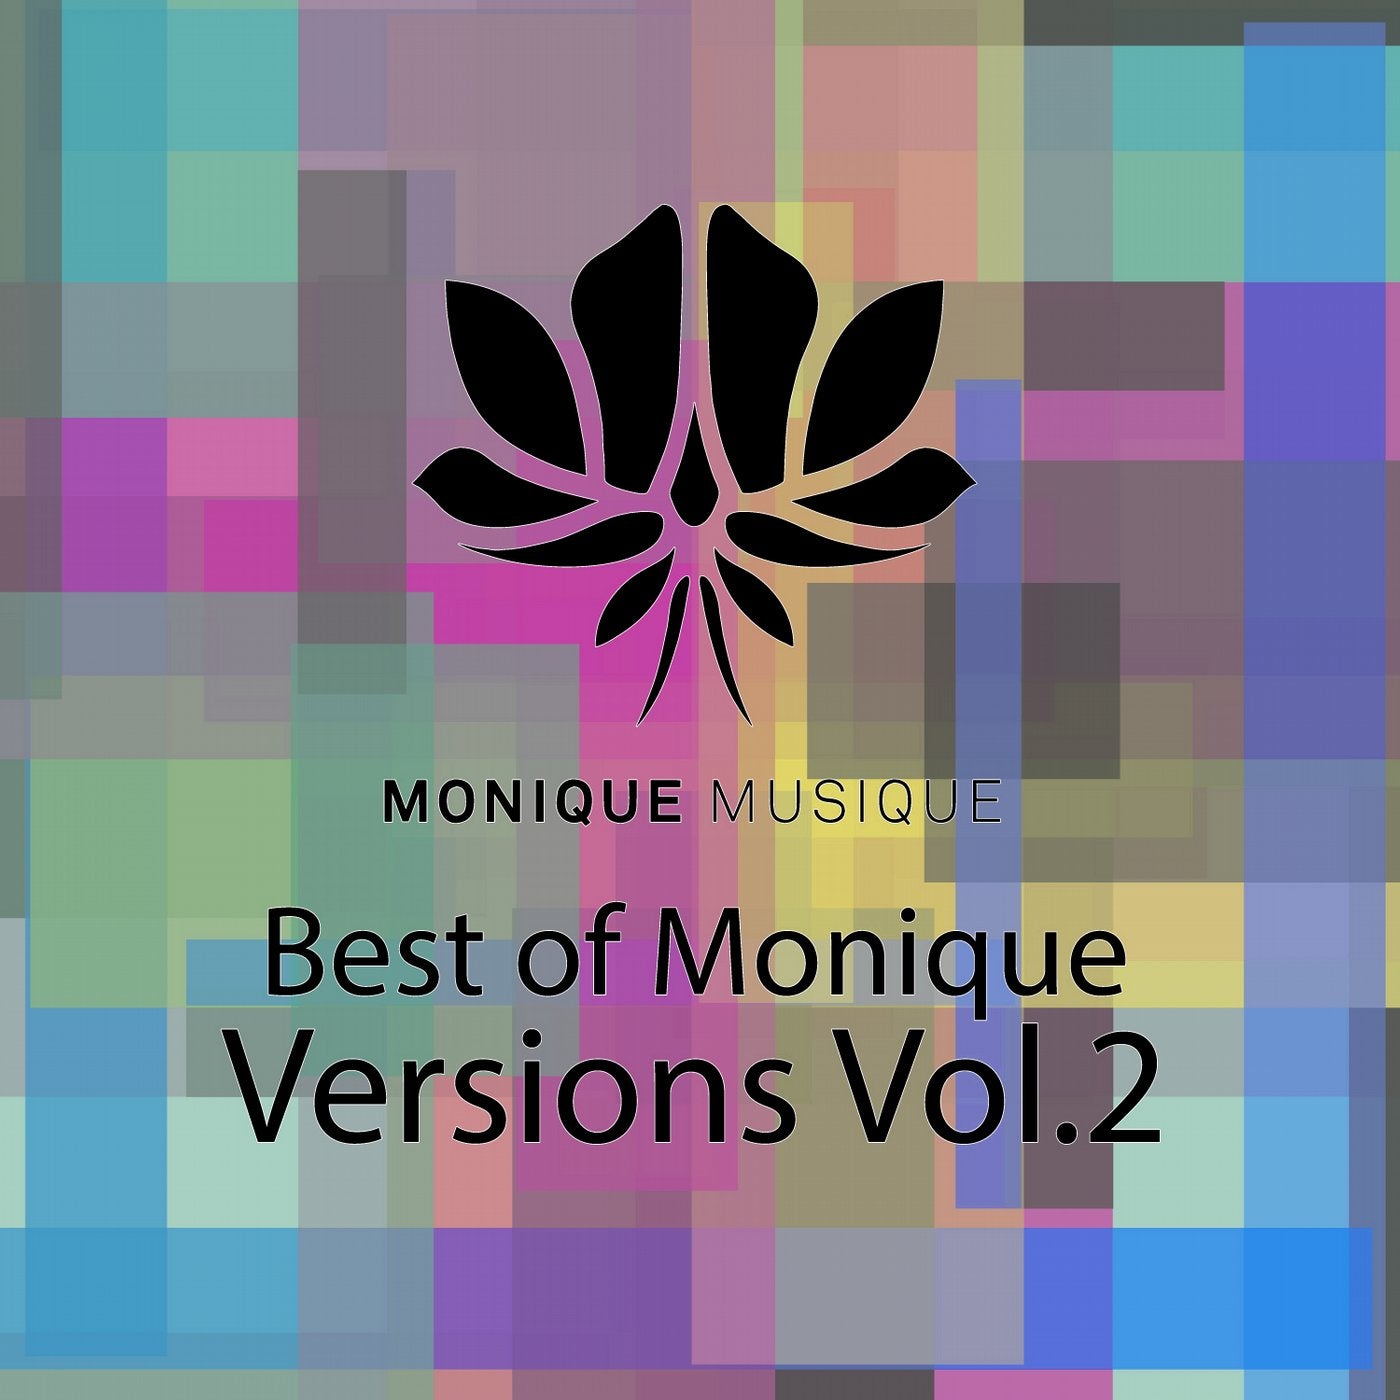 Best Of Monique - Versions Vol.2